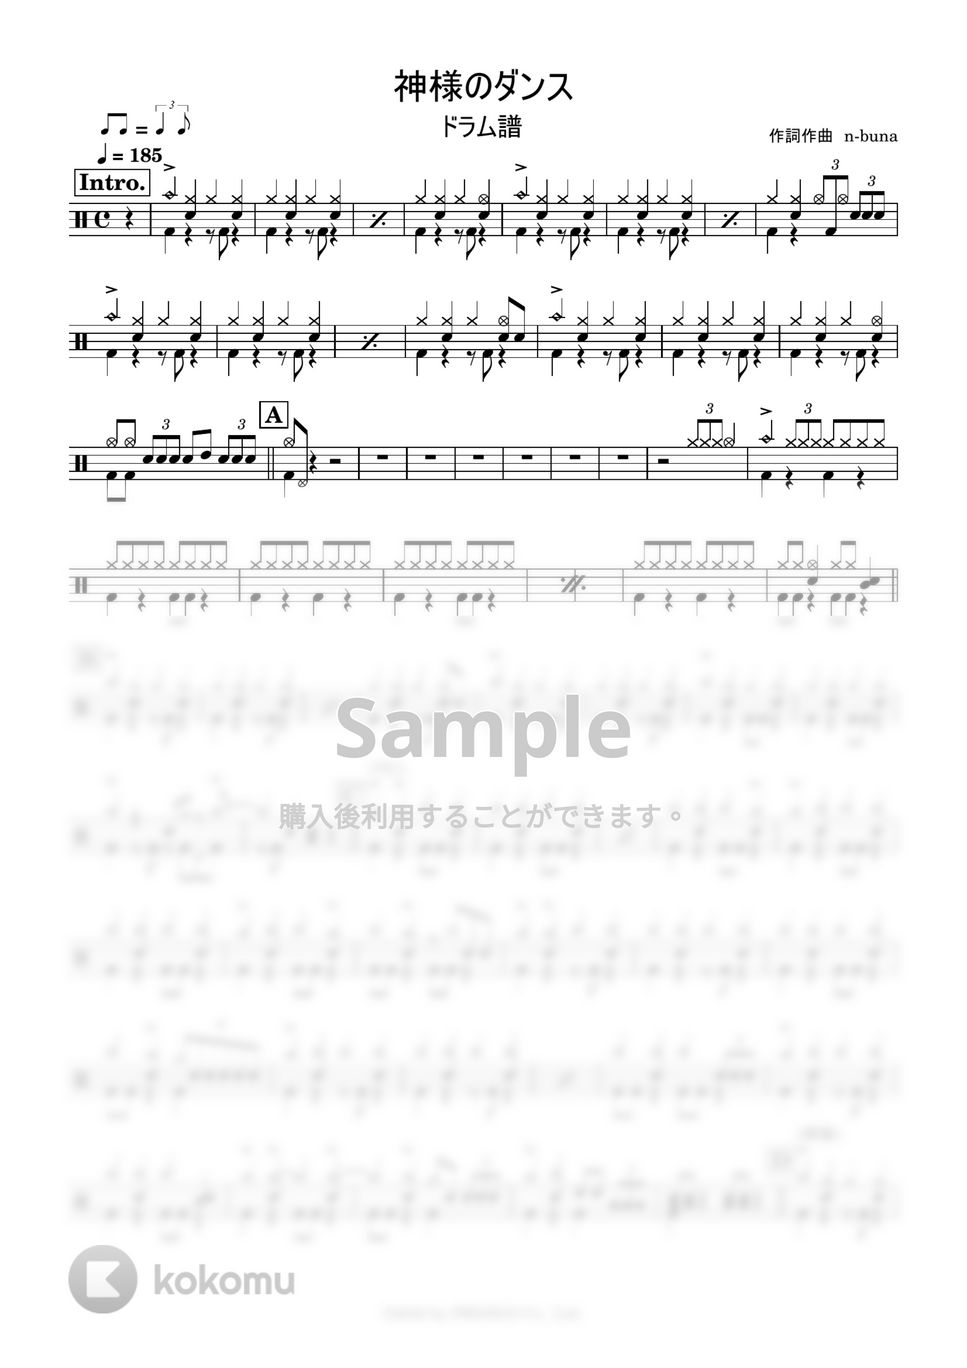 ヨルシカ - 神様のダンス (ドラム譜) by 鈴木建作